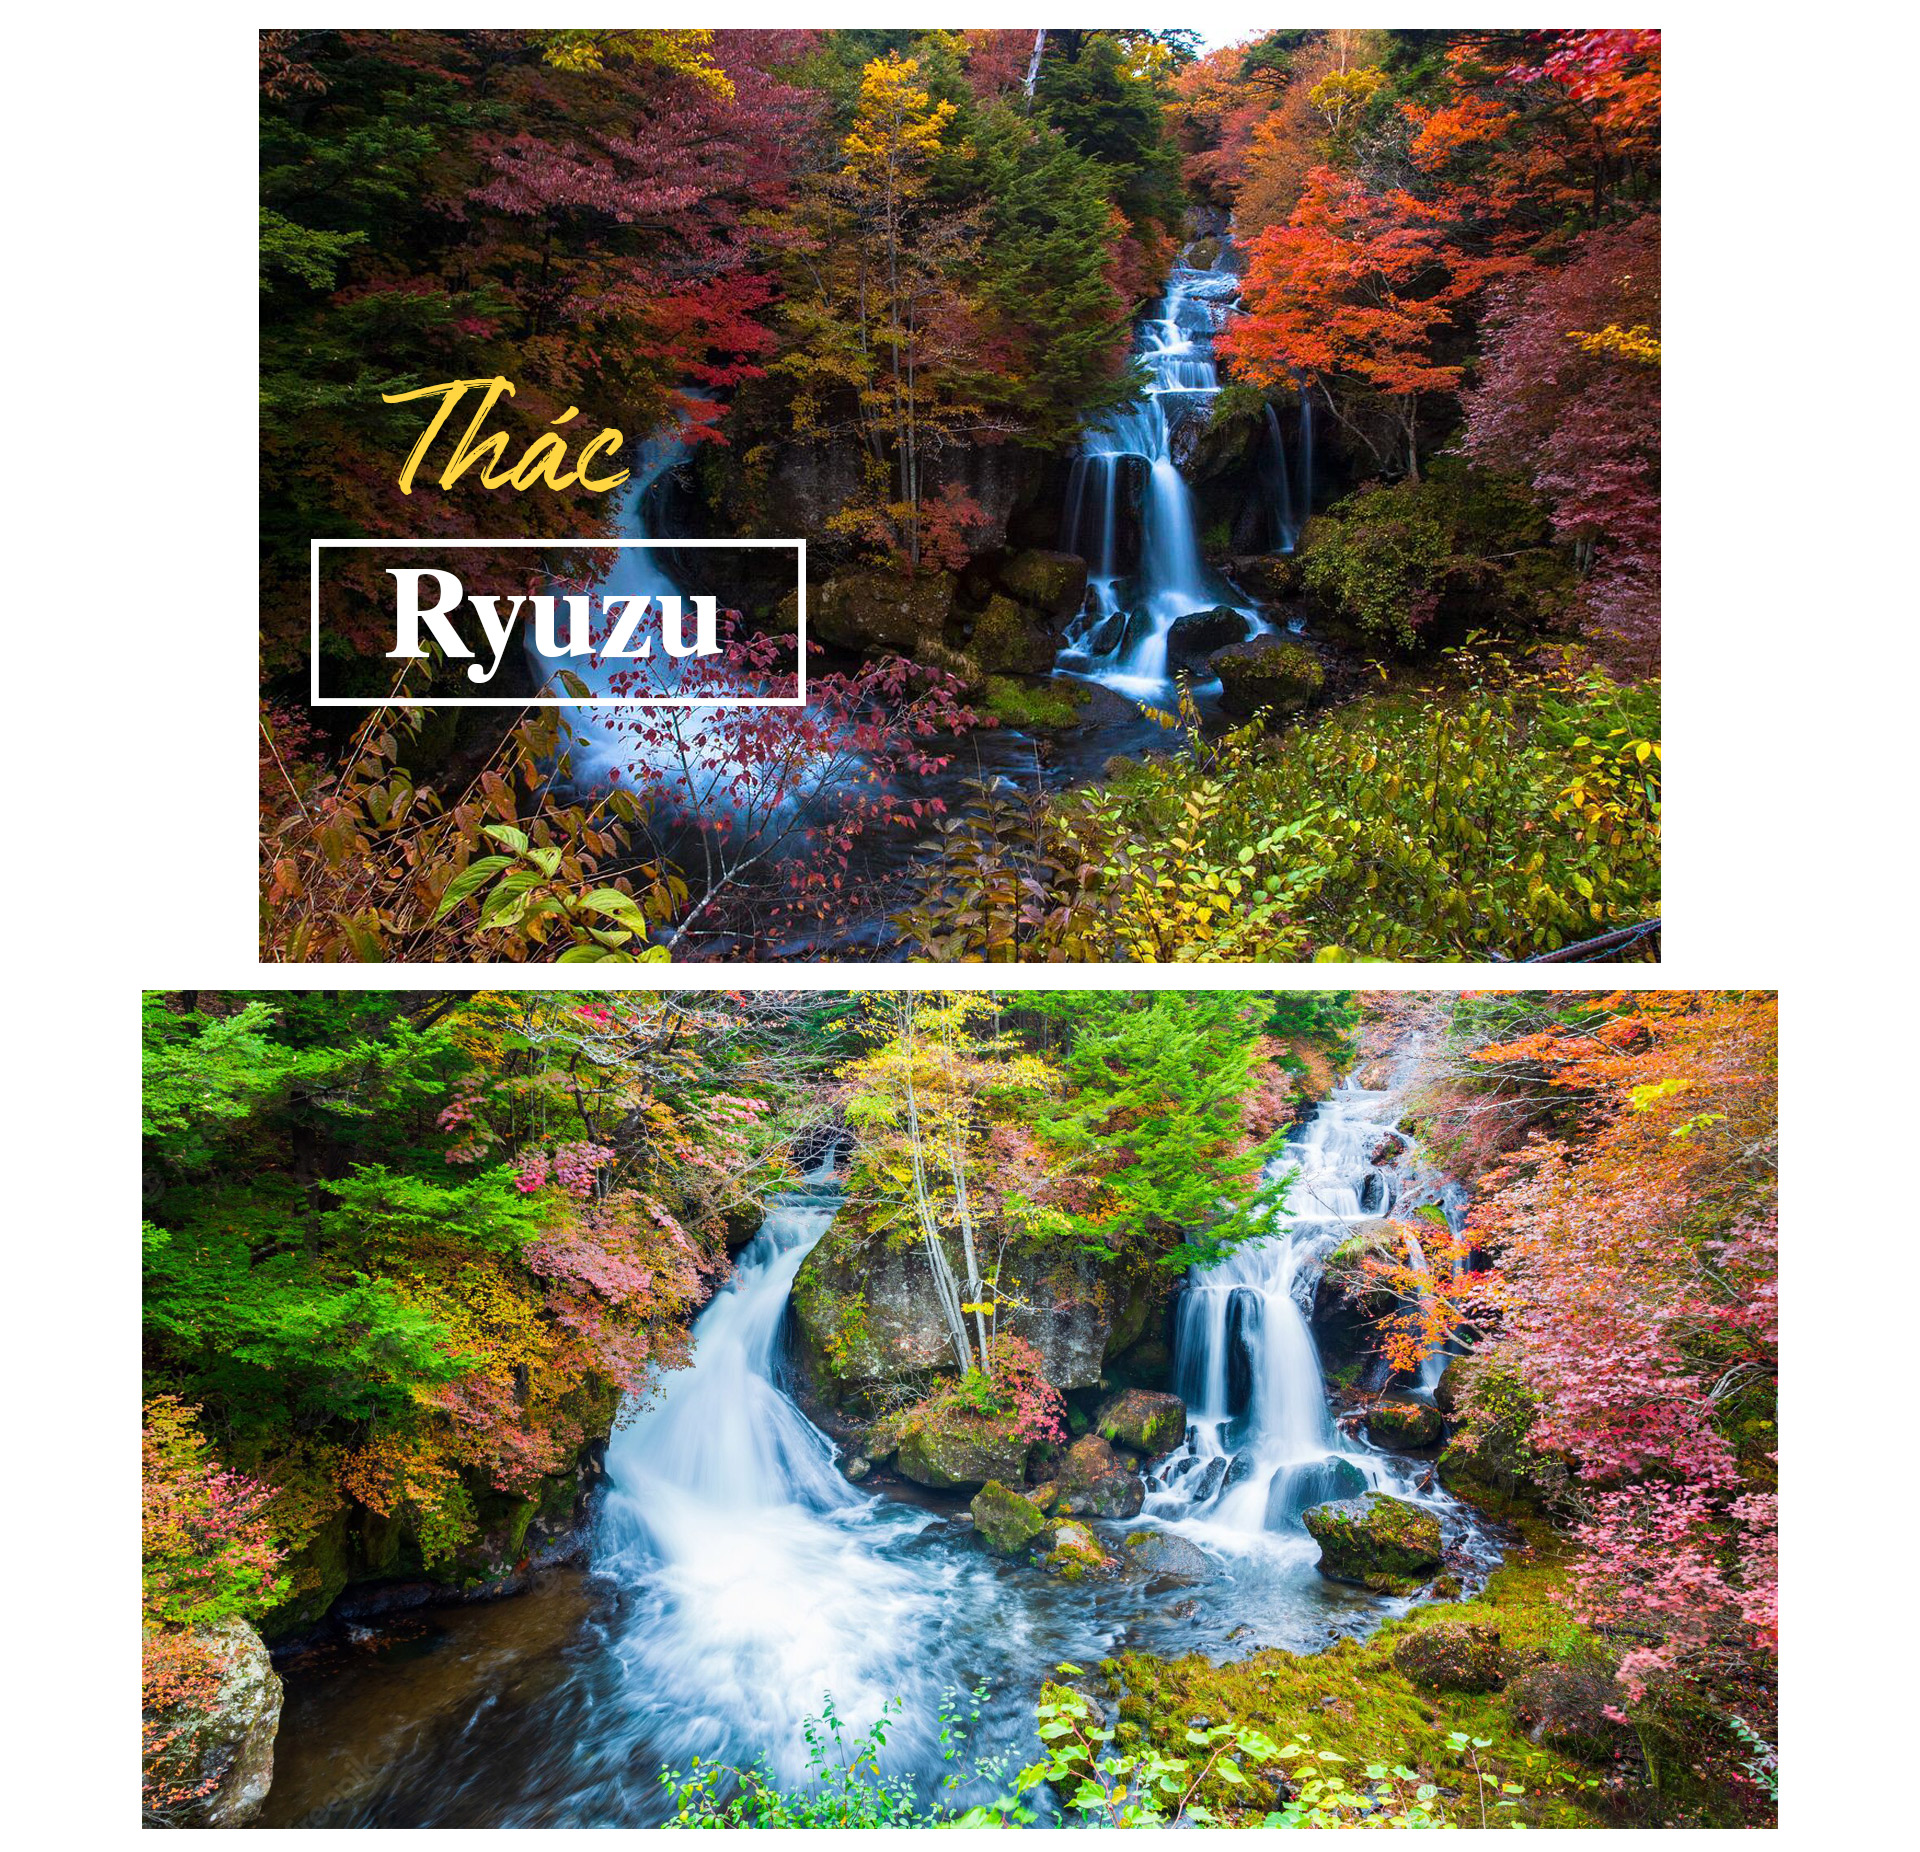 Chiêm ngưỡng những thác nước đẹp nhất Nhật Bản - 4